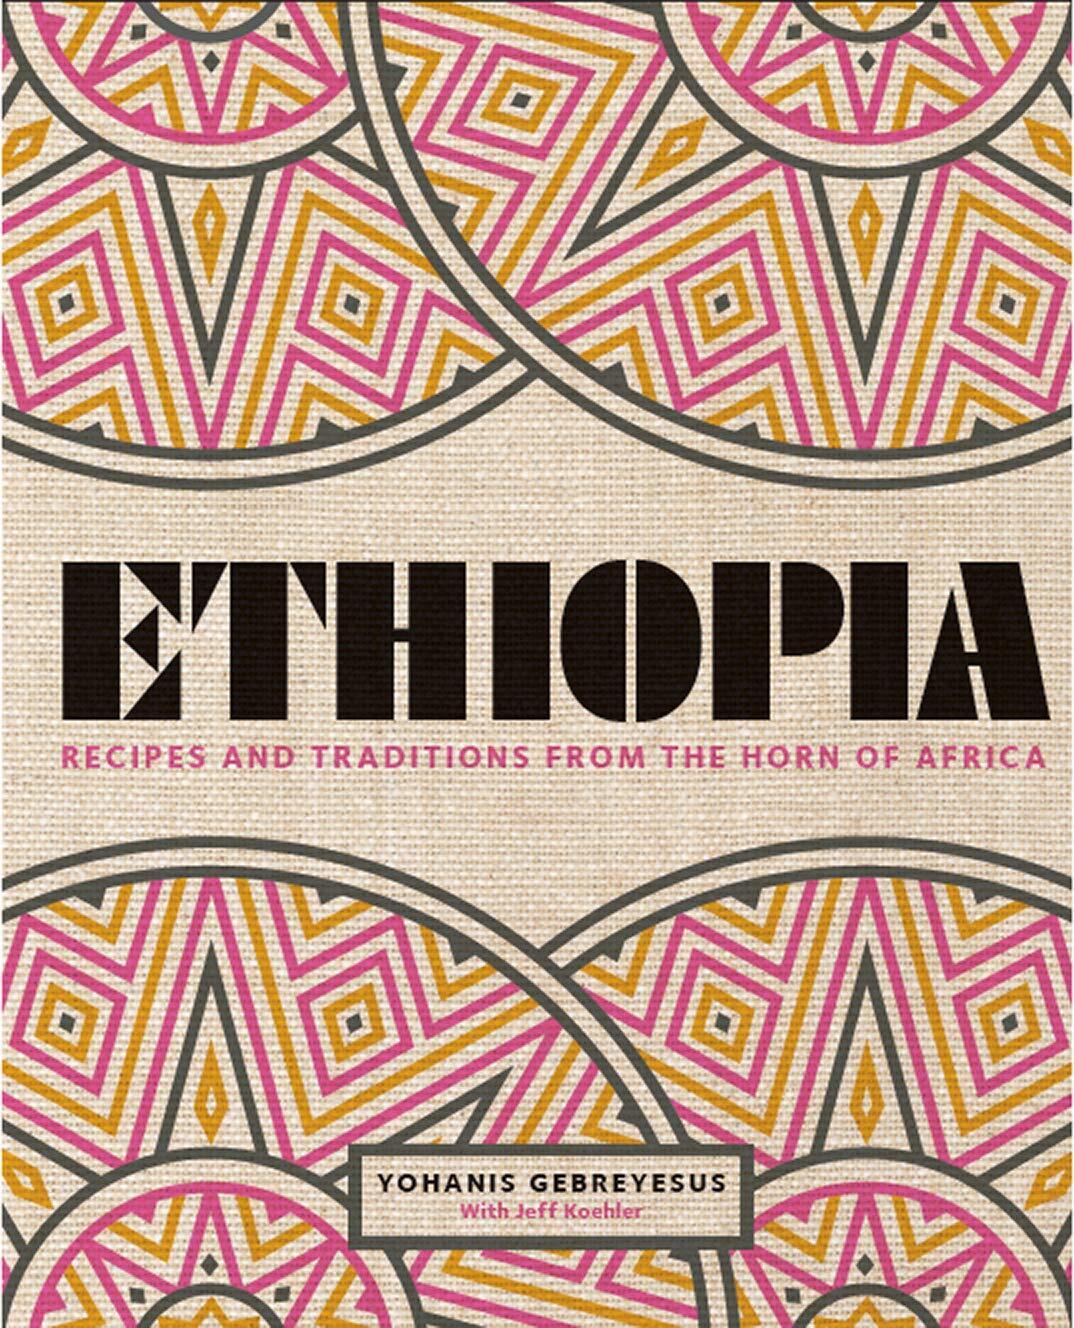 Ethiopian_cookbook6y2vc.jpg